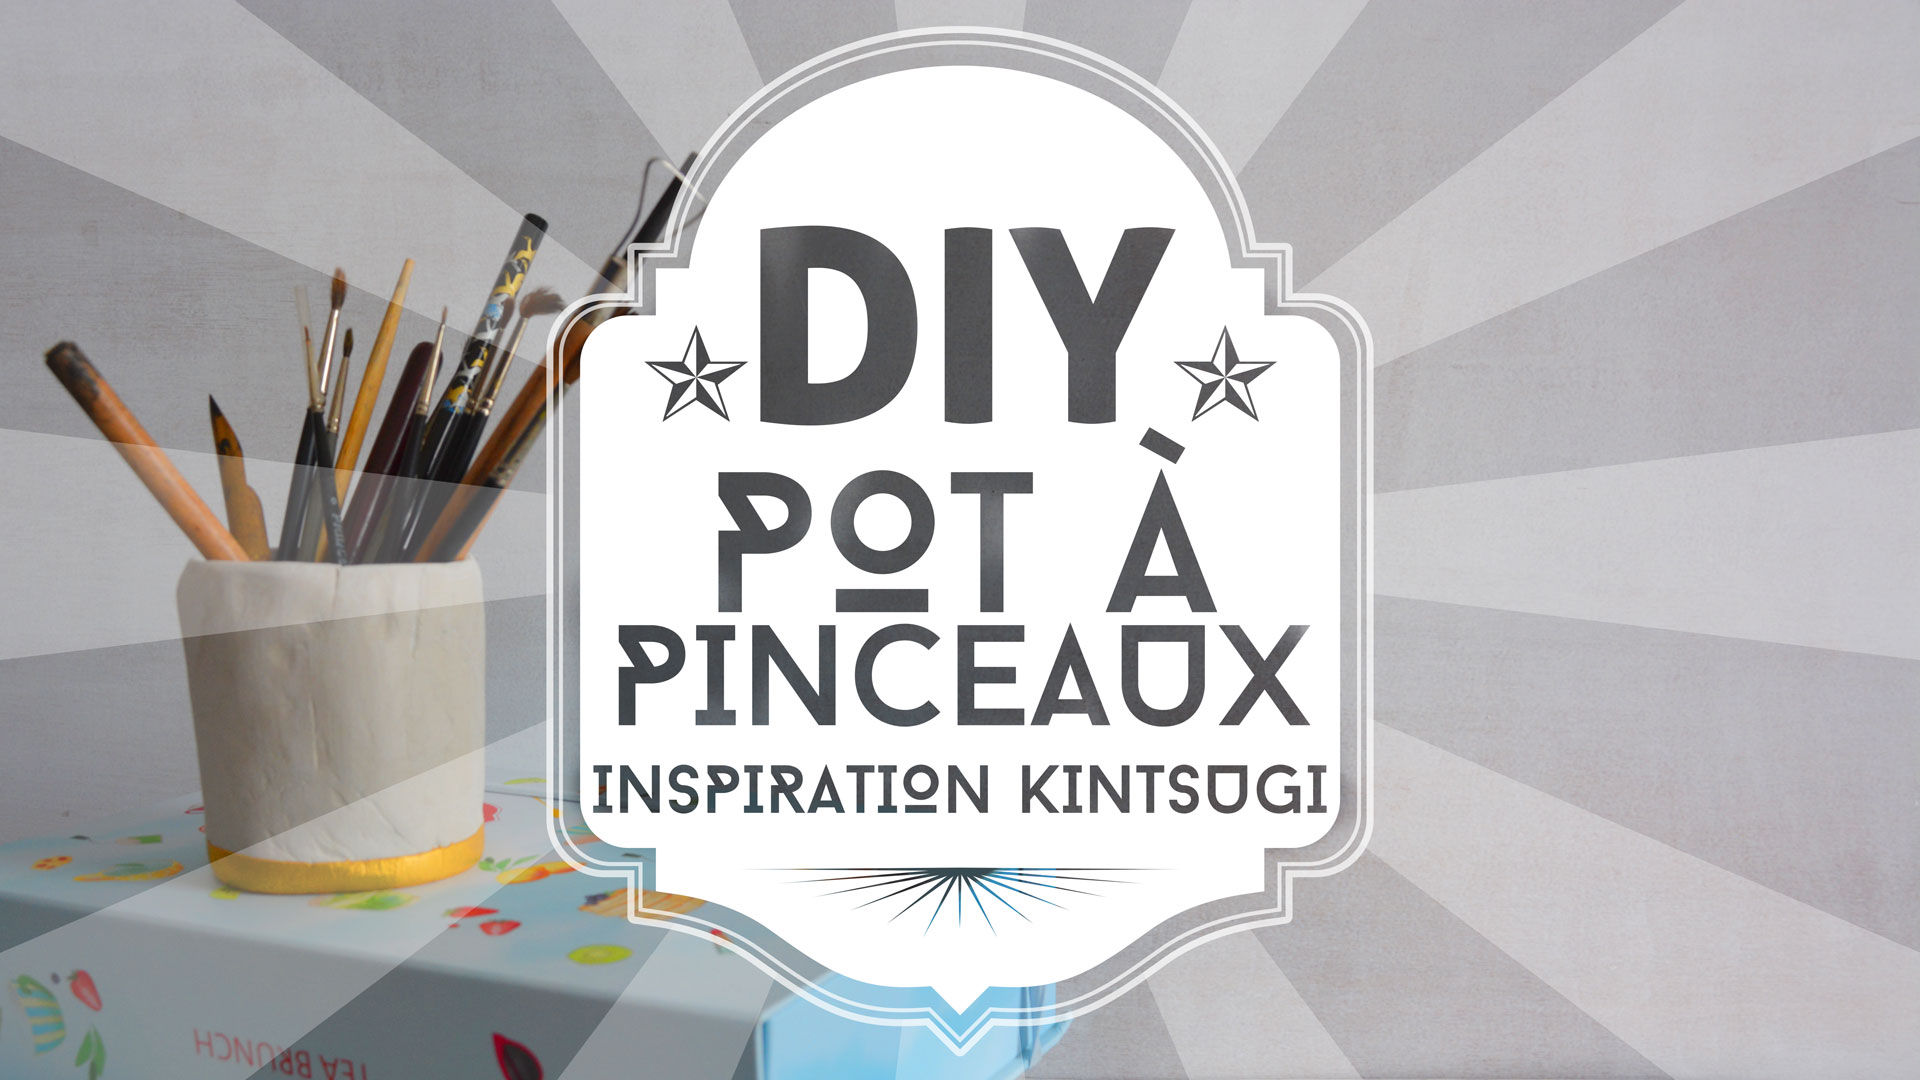 DIY : pot à pinceaux inspiration Kintsugi